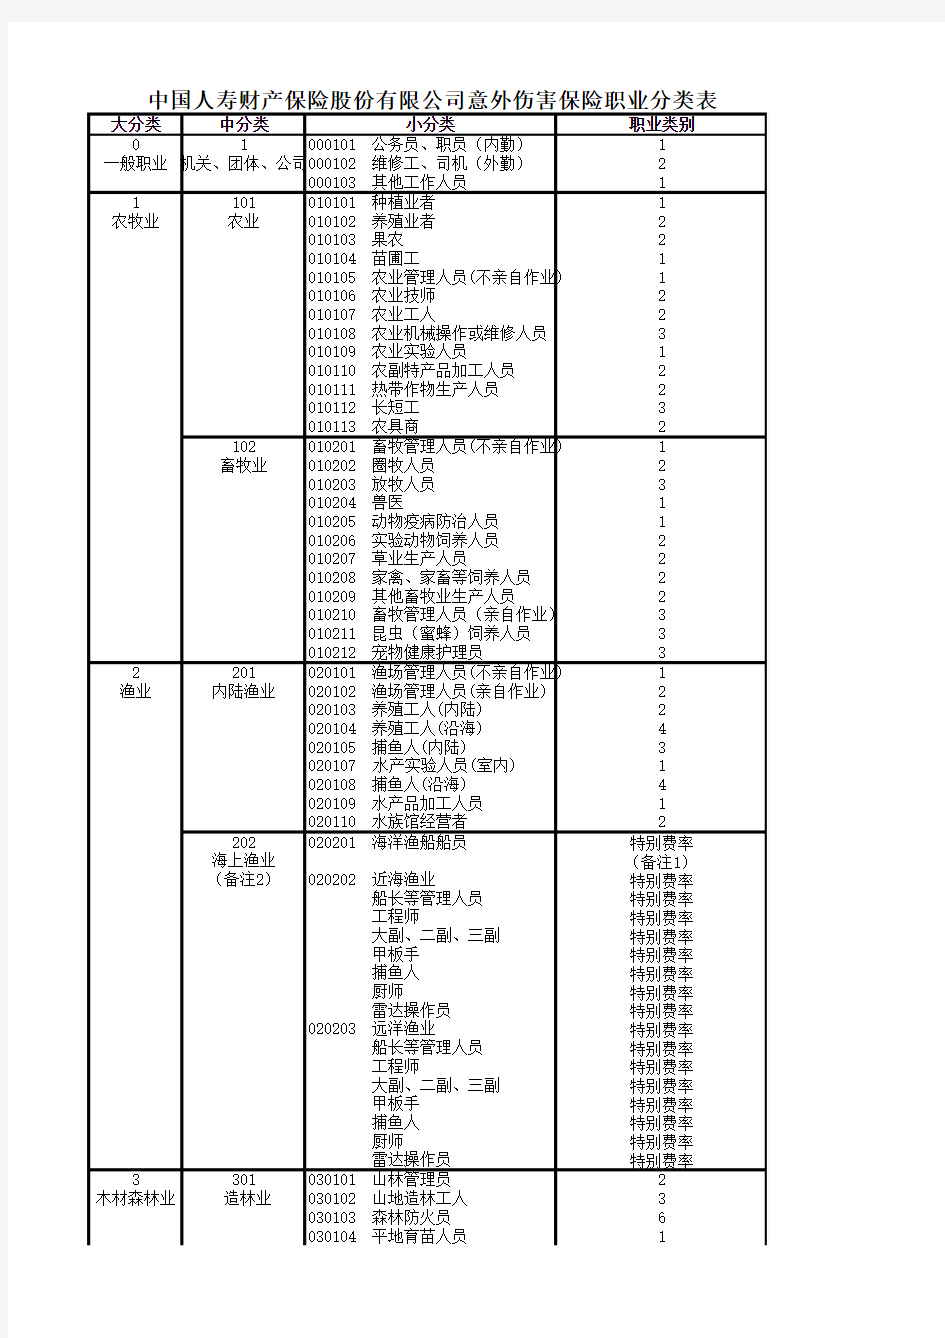 1-中国人寿财产保险股份有限公司意外伤害保险职业分类表(2014)